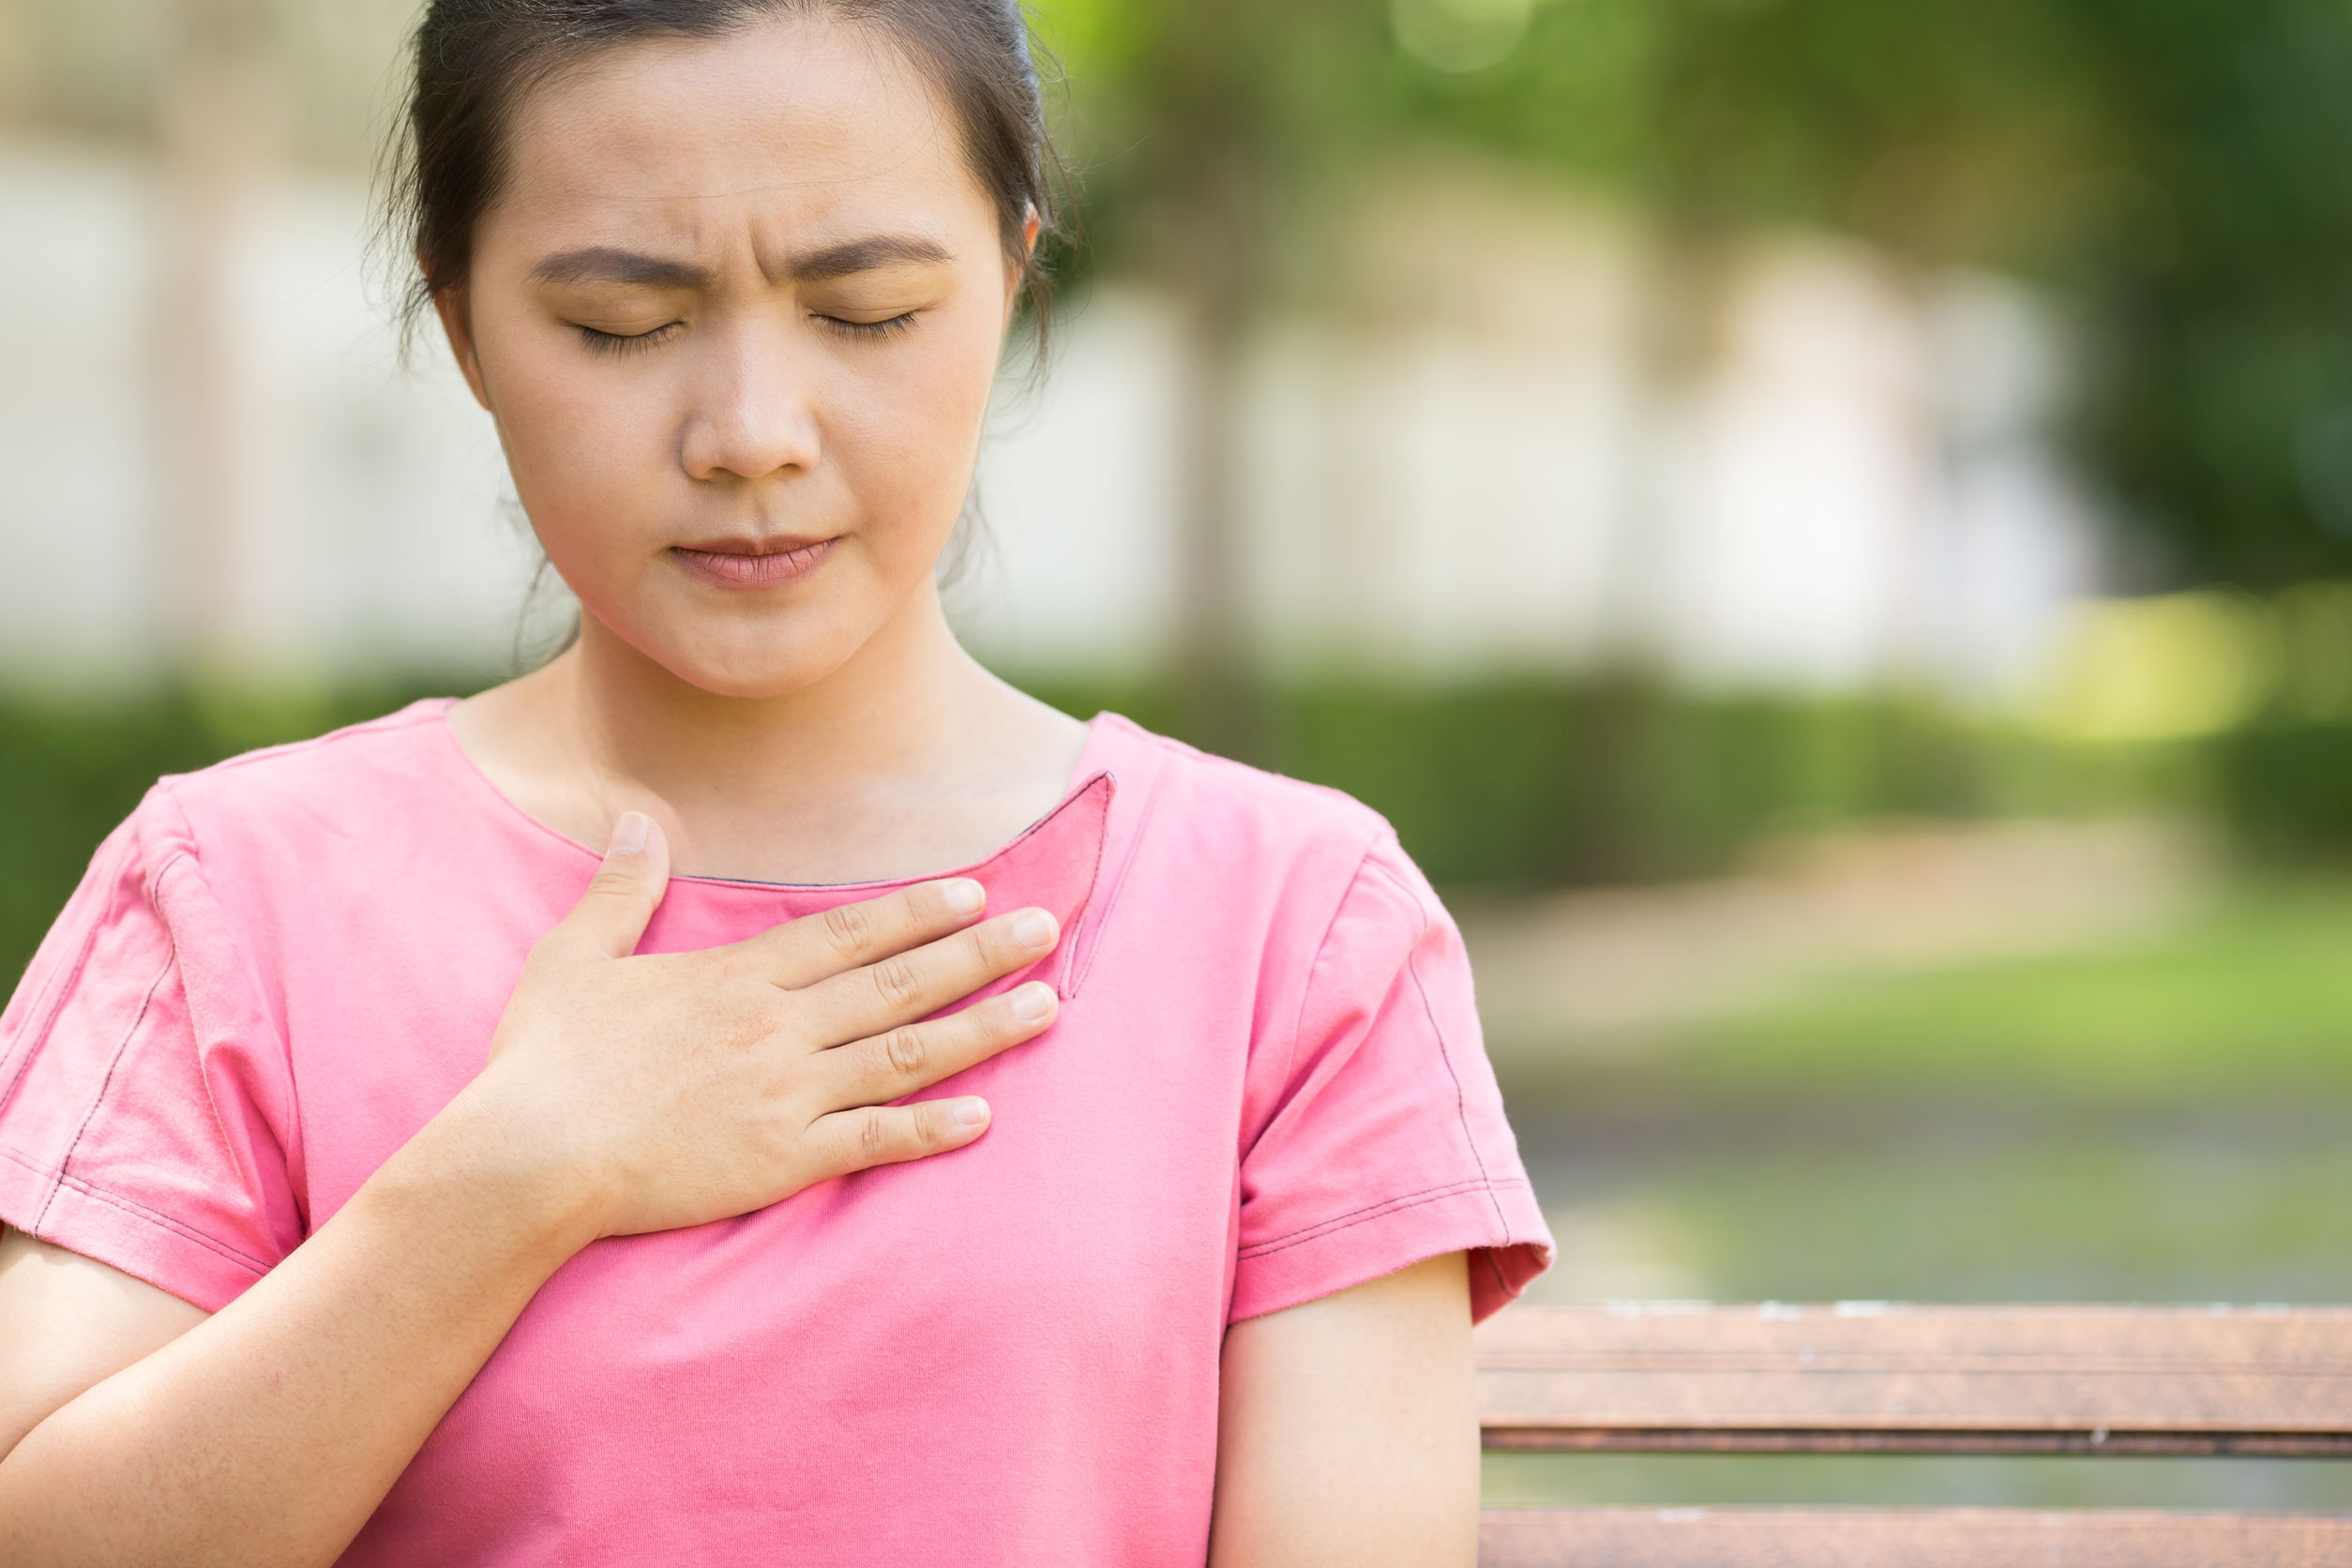 Woman has heartburn symptoms in the garden